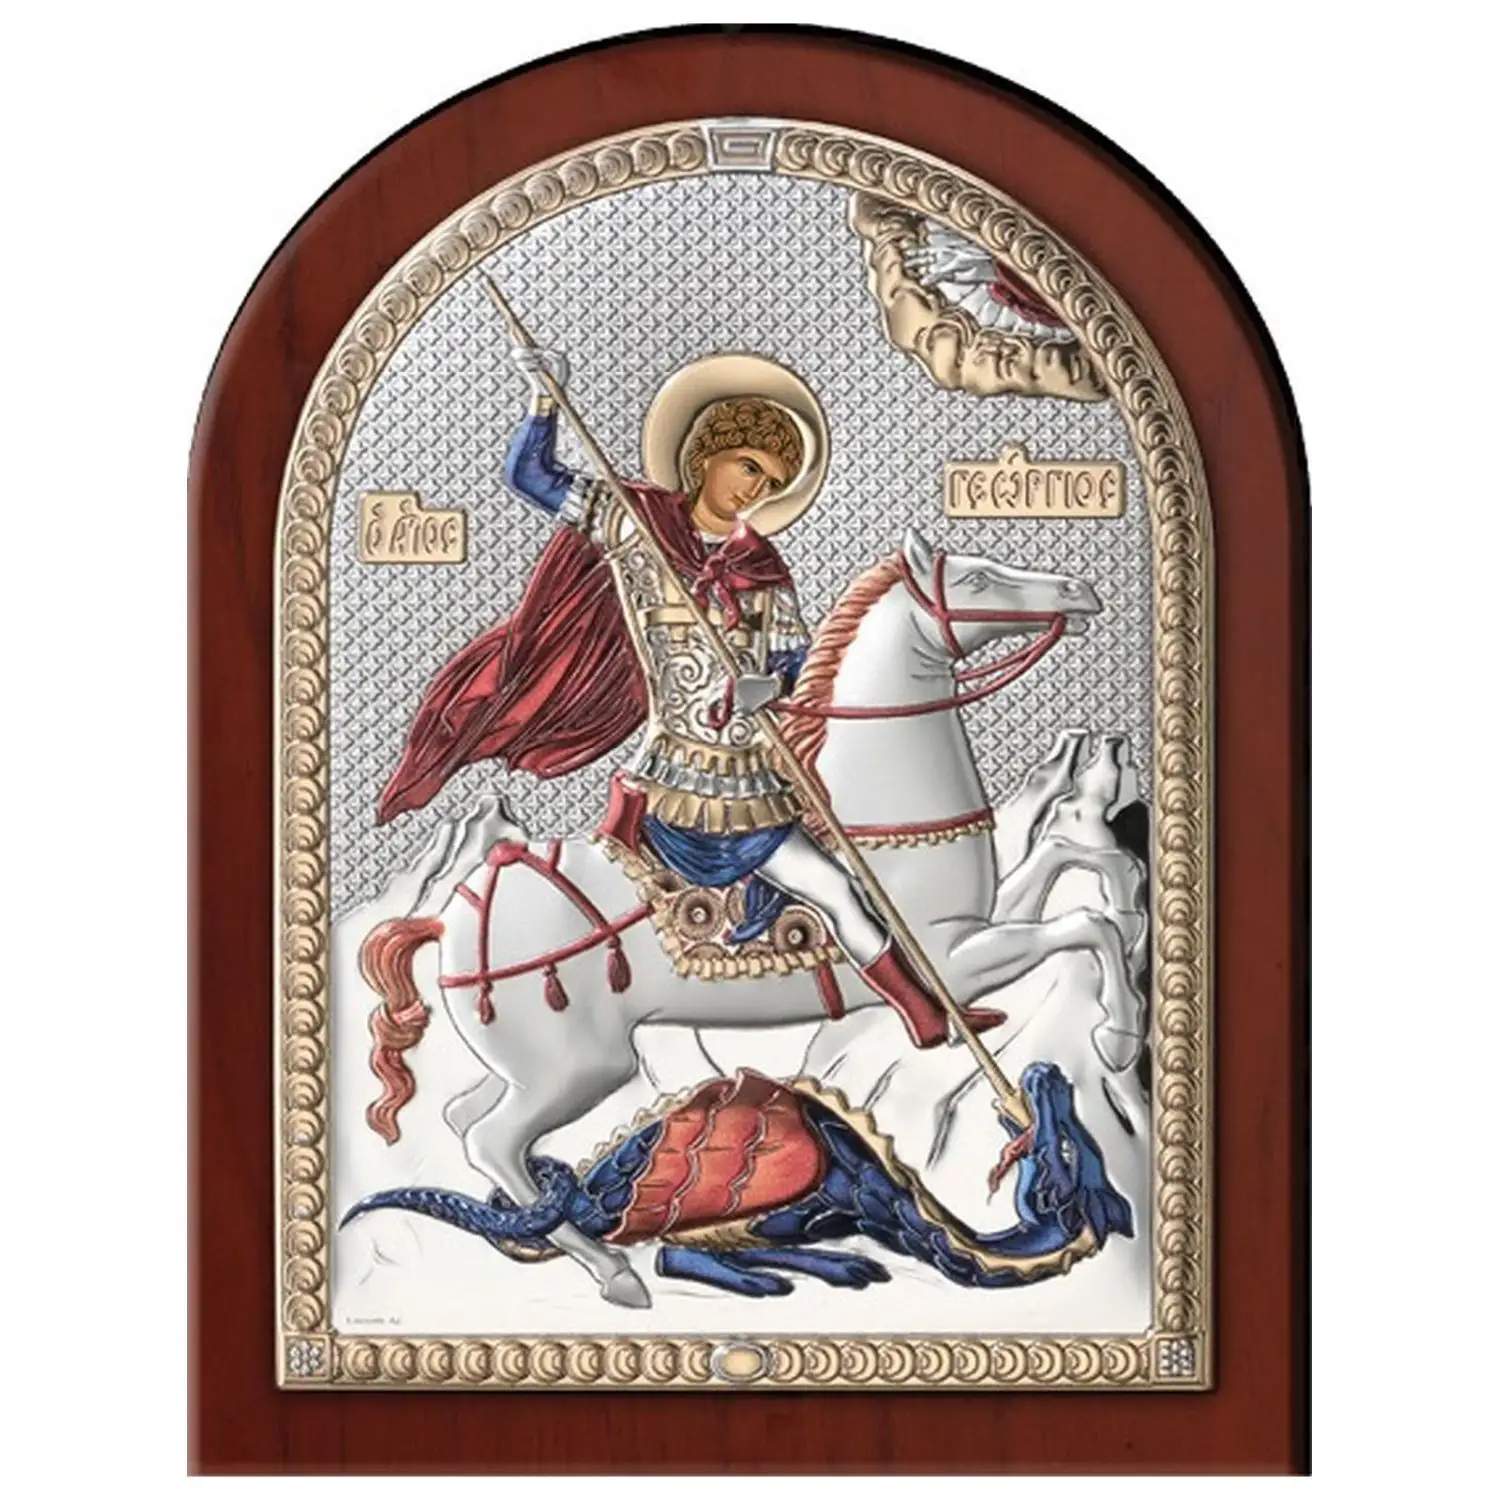 Икона Святой Георгий Победоносец (6*8.5) икона георгий победоносец 7х9 08 29 02 см